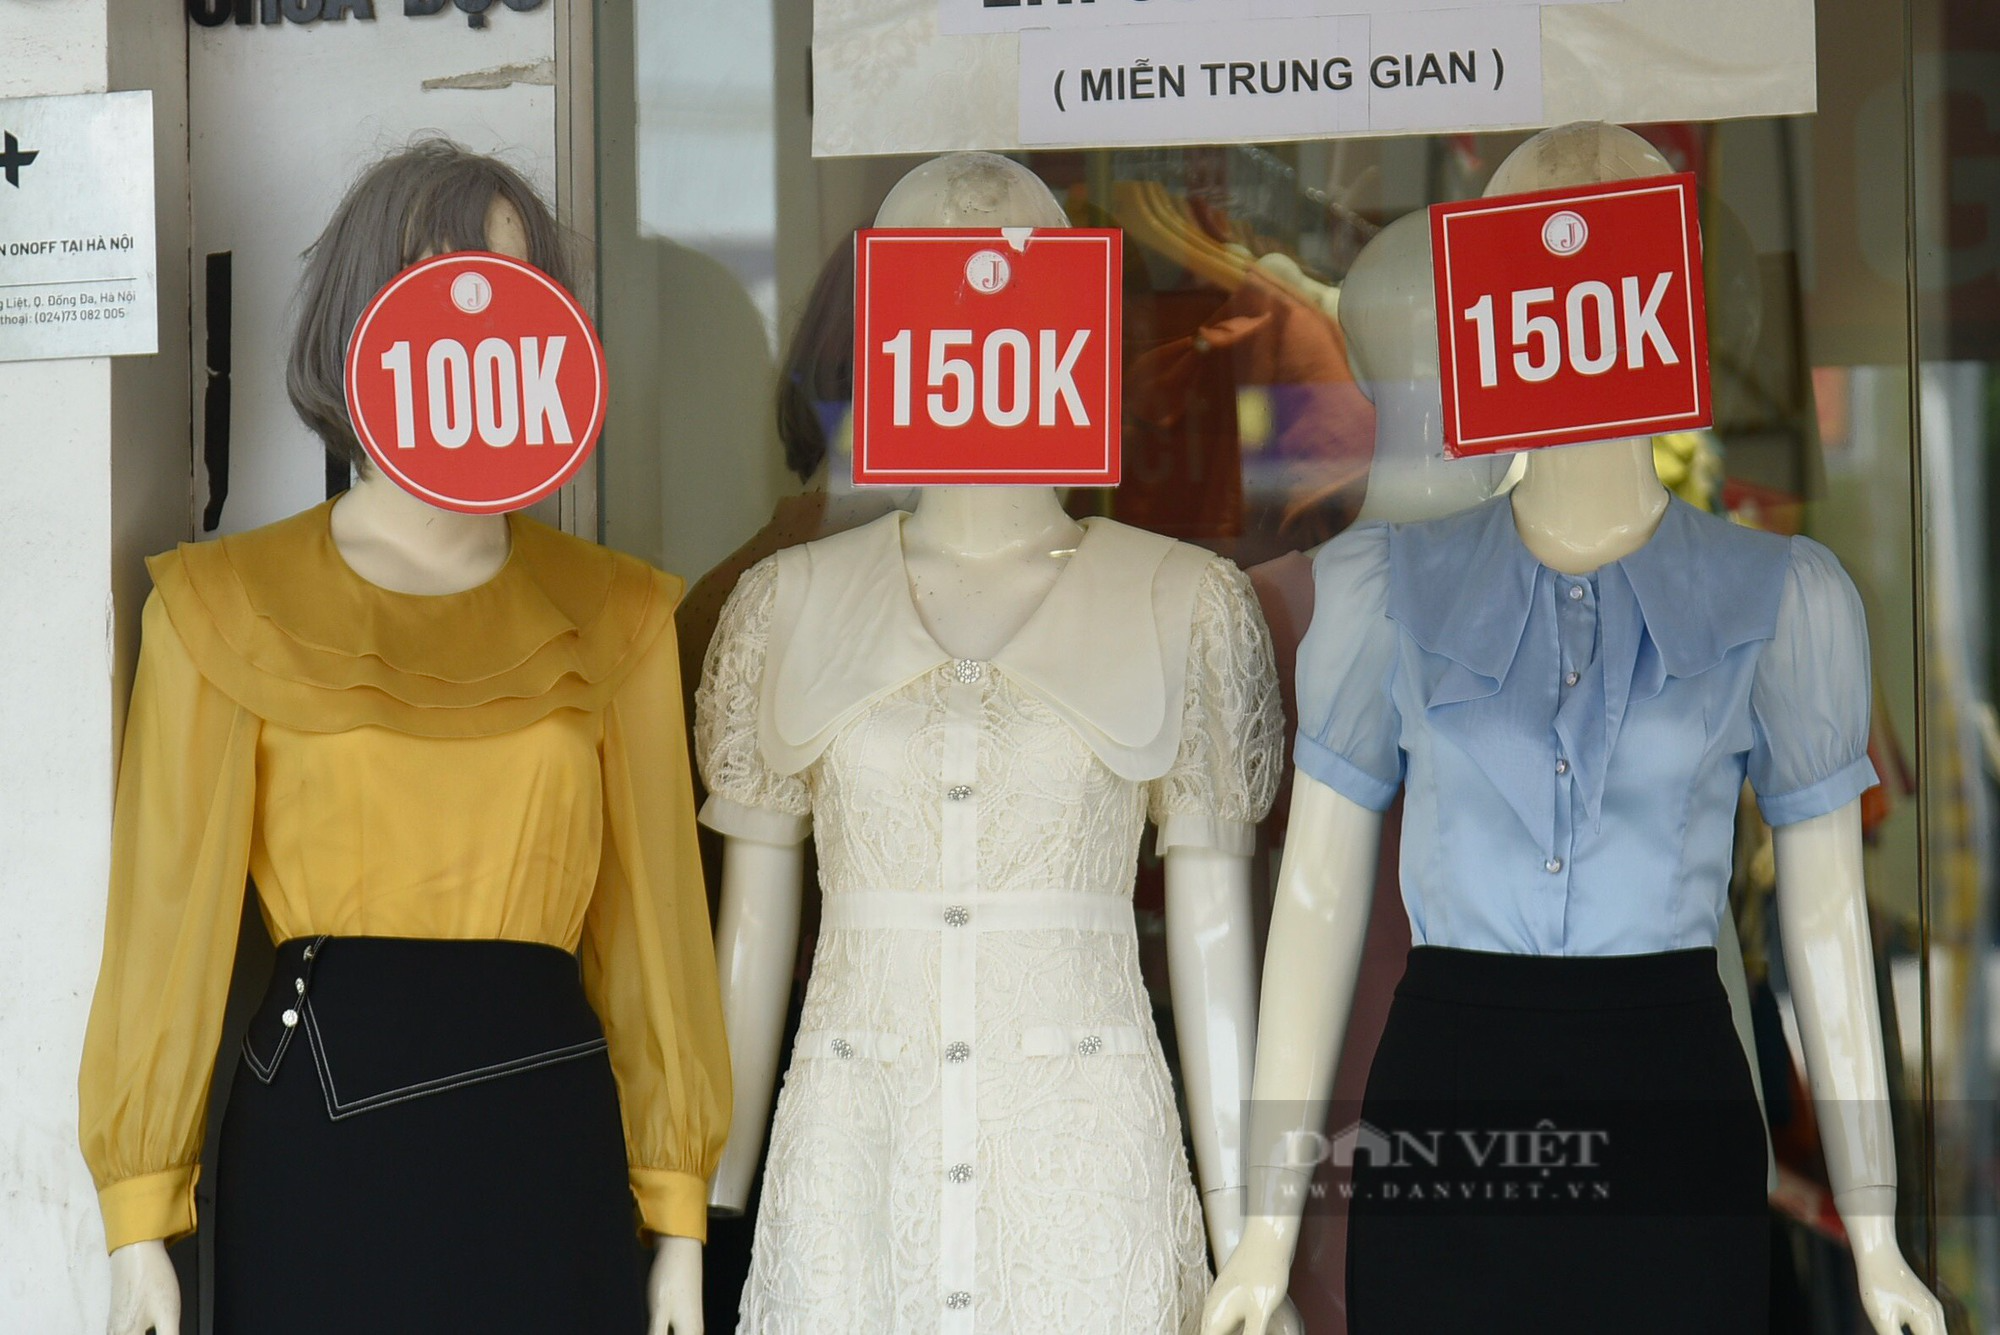 Hàng loạt cửa tiệm tại các tuyến phố thời trang Hà Nội giảm giá nhưng vẫn ế khách - Ảnh 4.